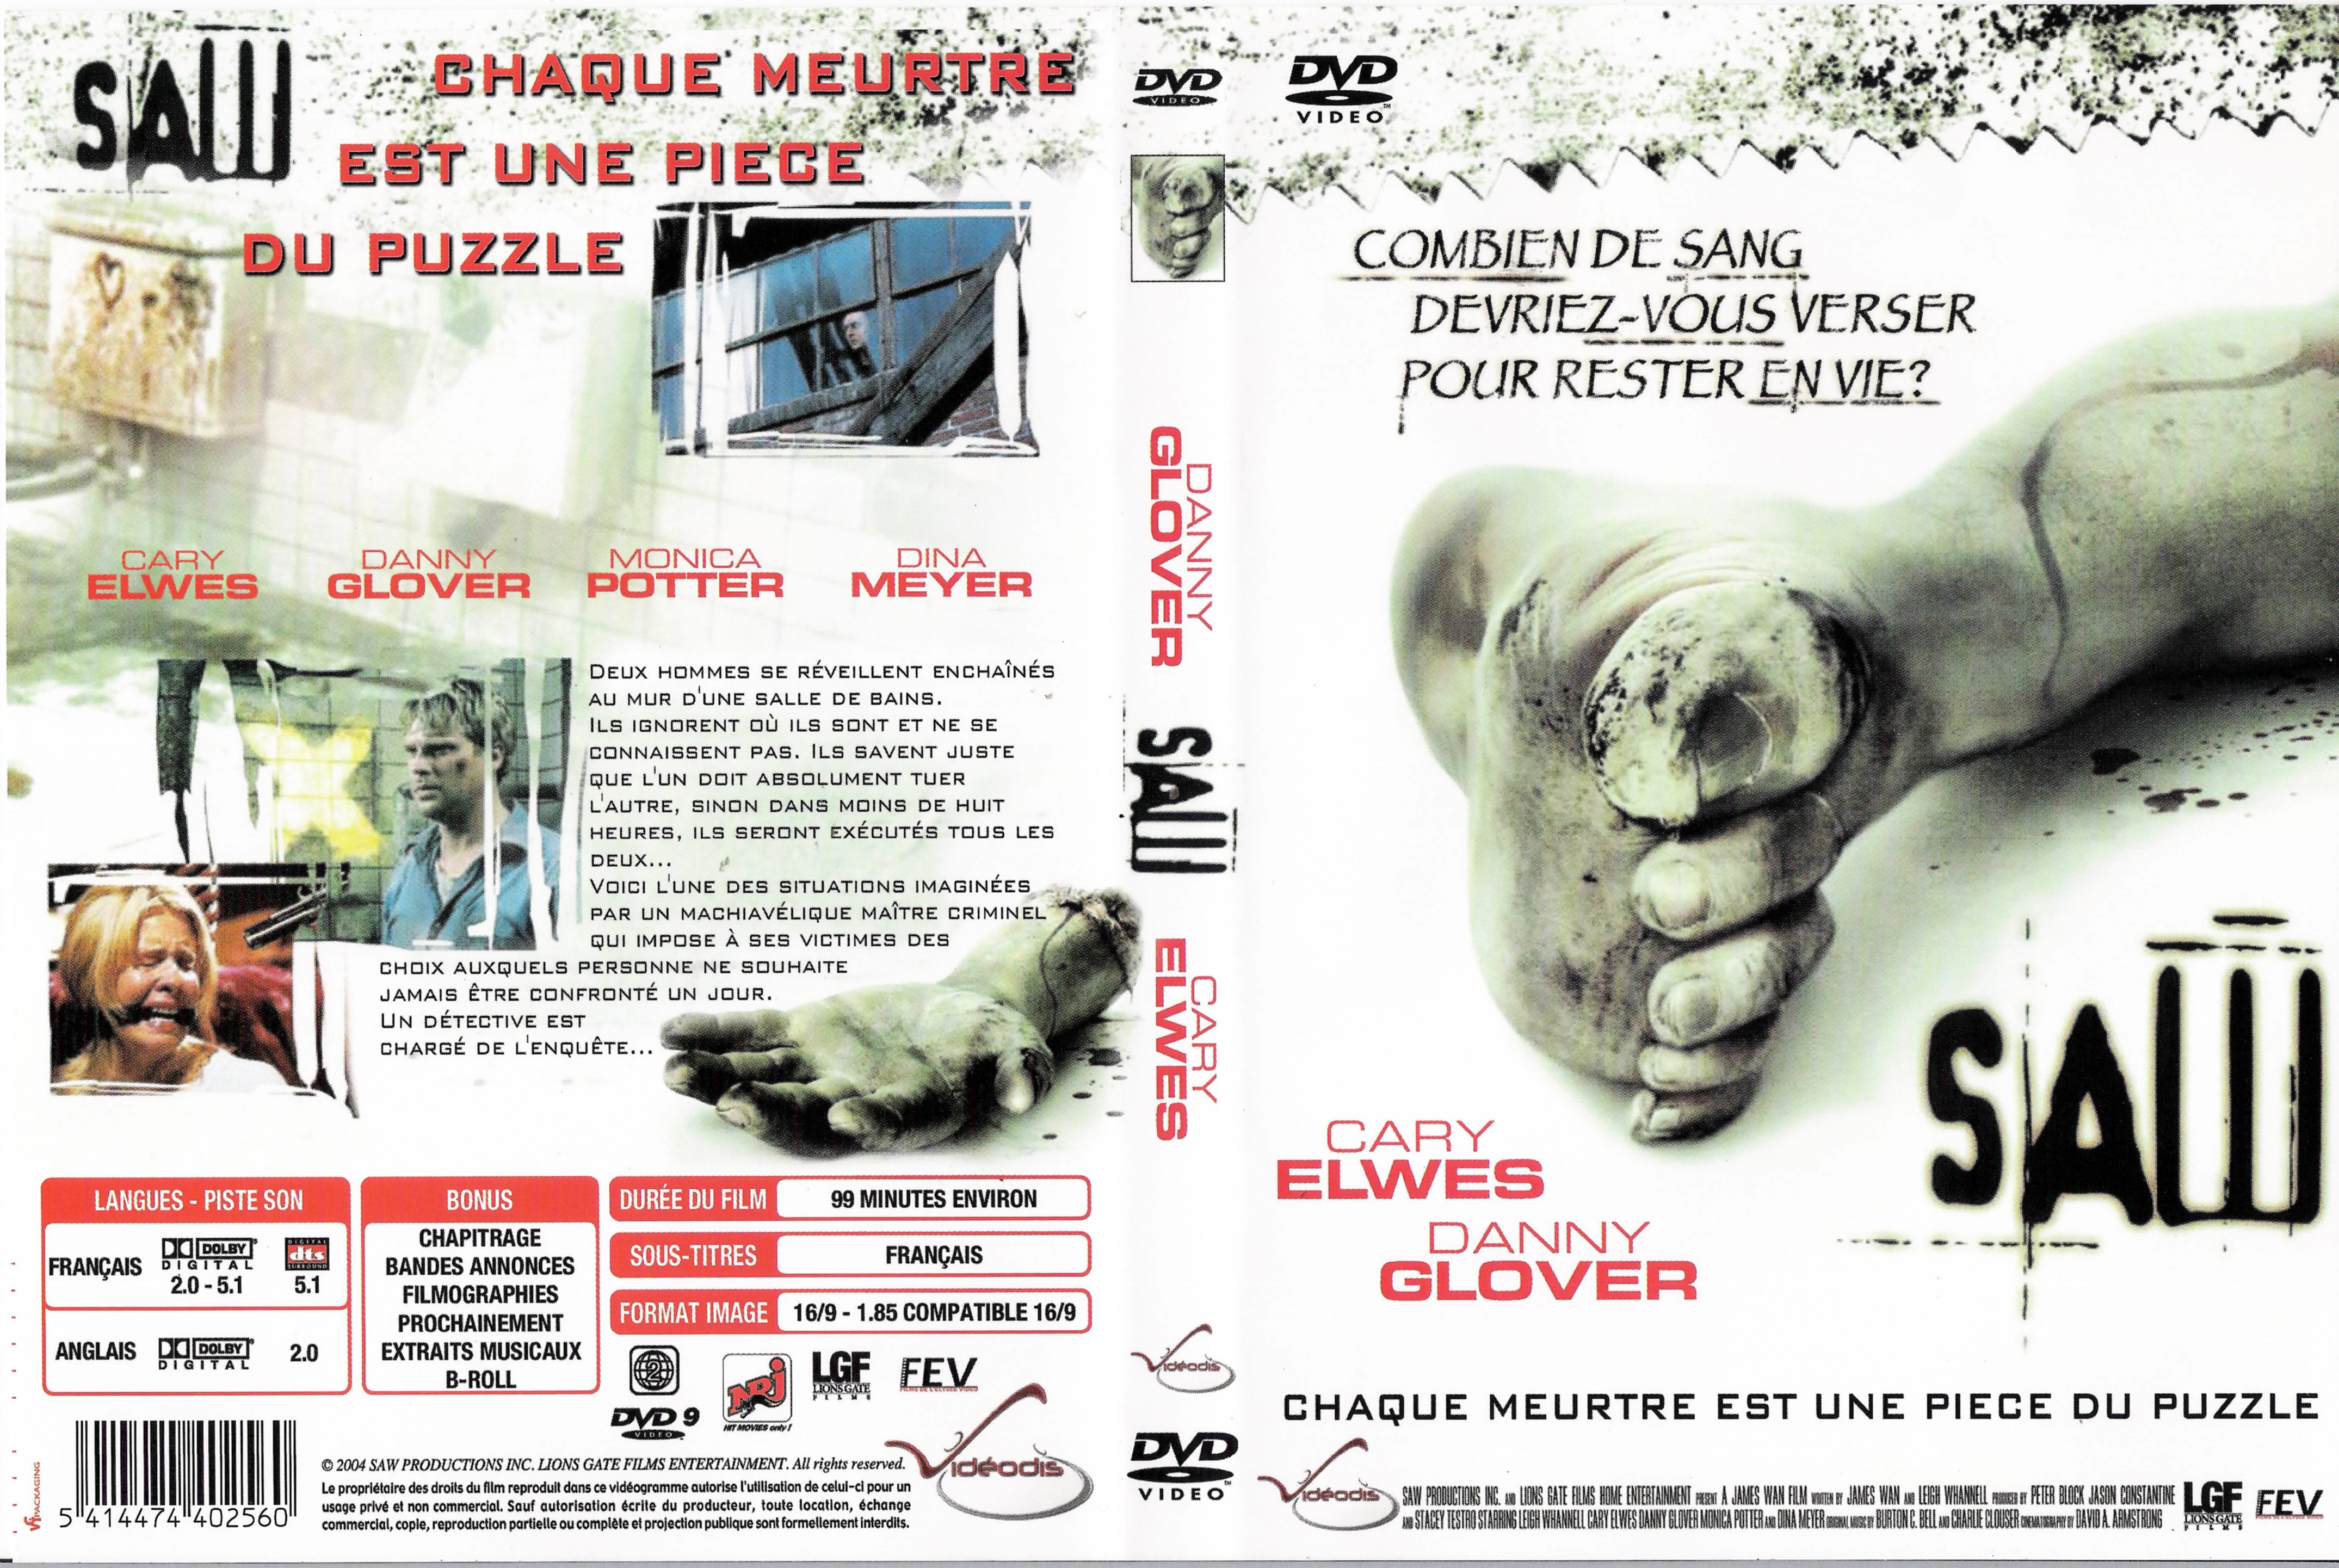 Jaquette DVD Saw v2